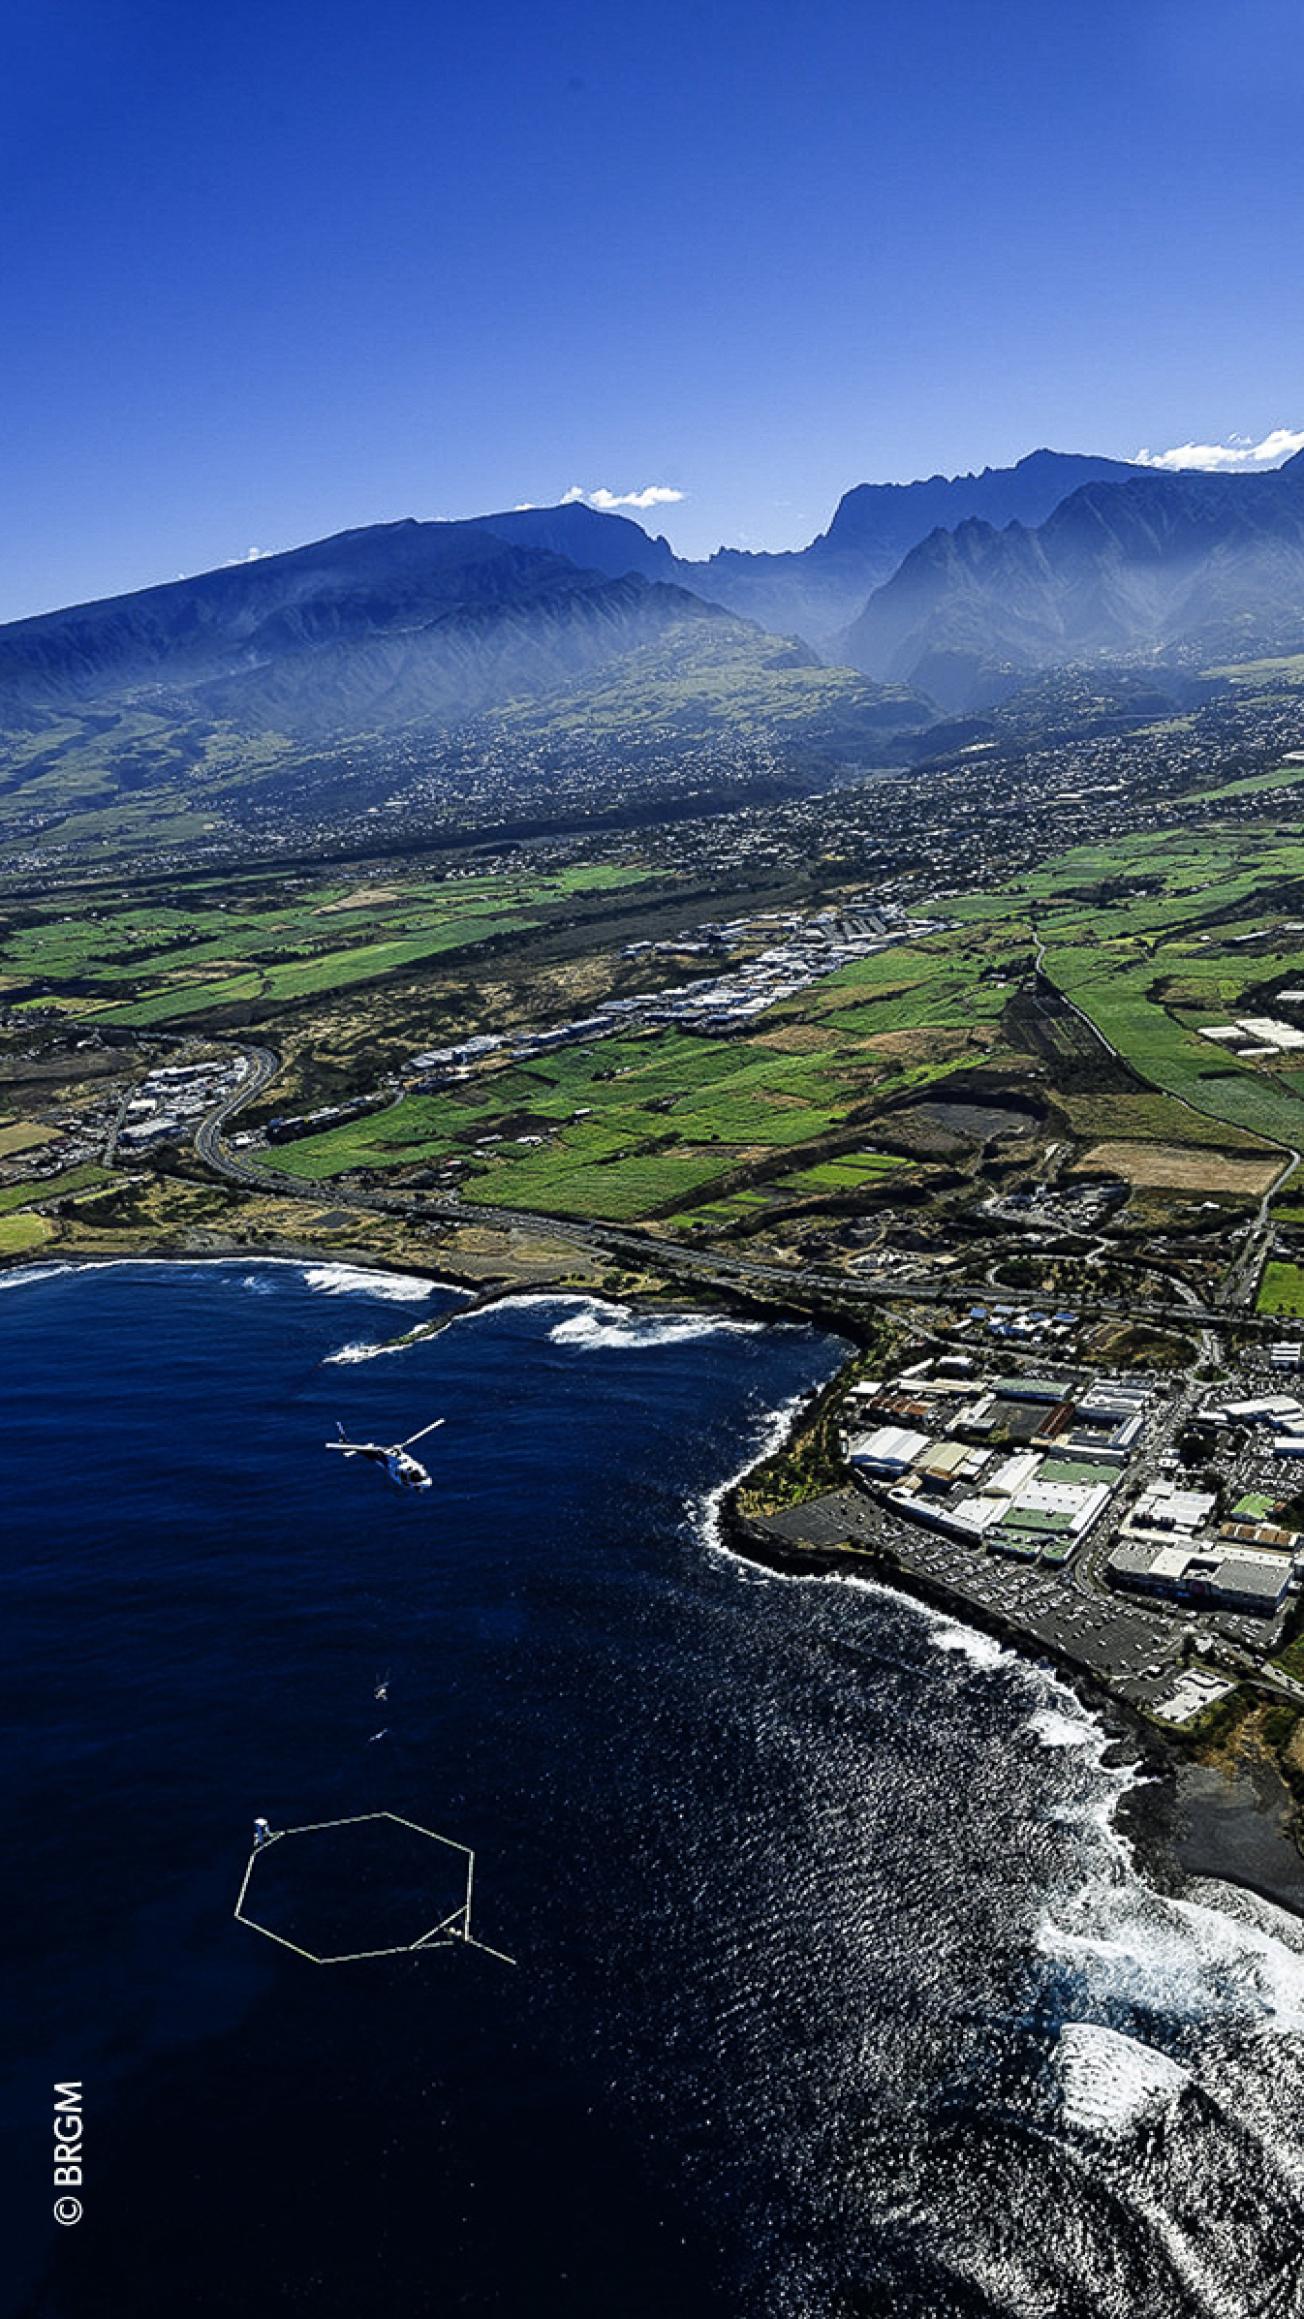 Campagne ReunEM de géophysique héliportée à la Réunion